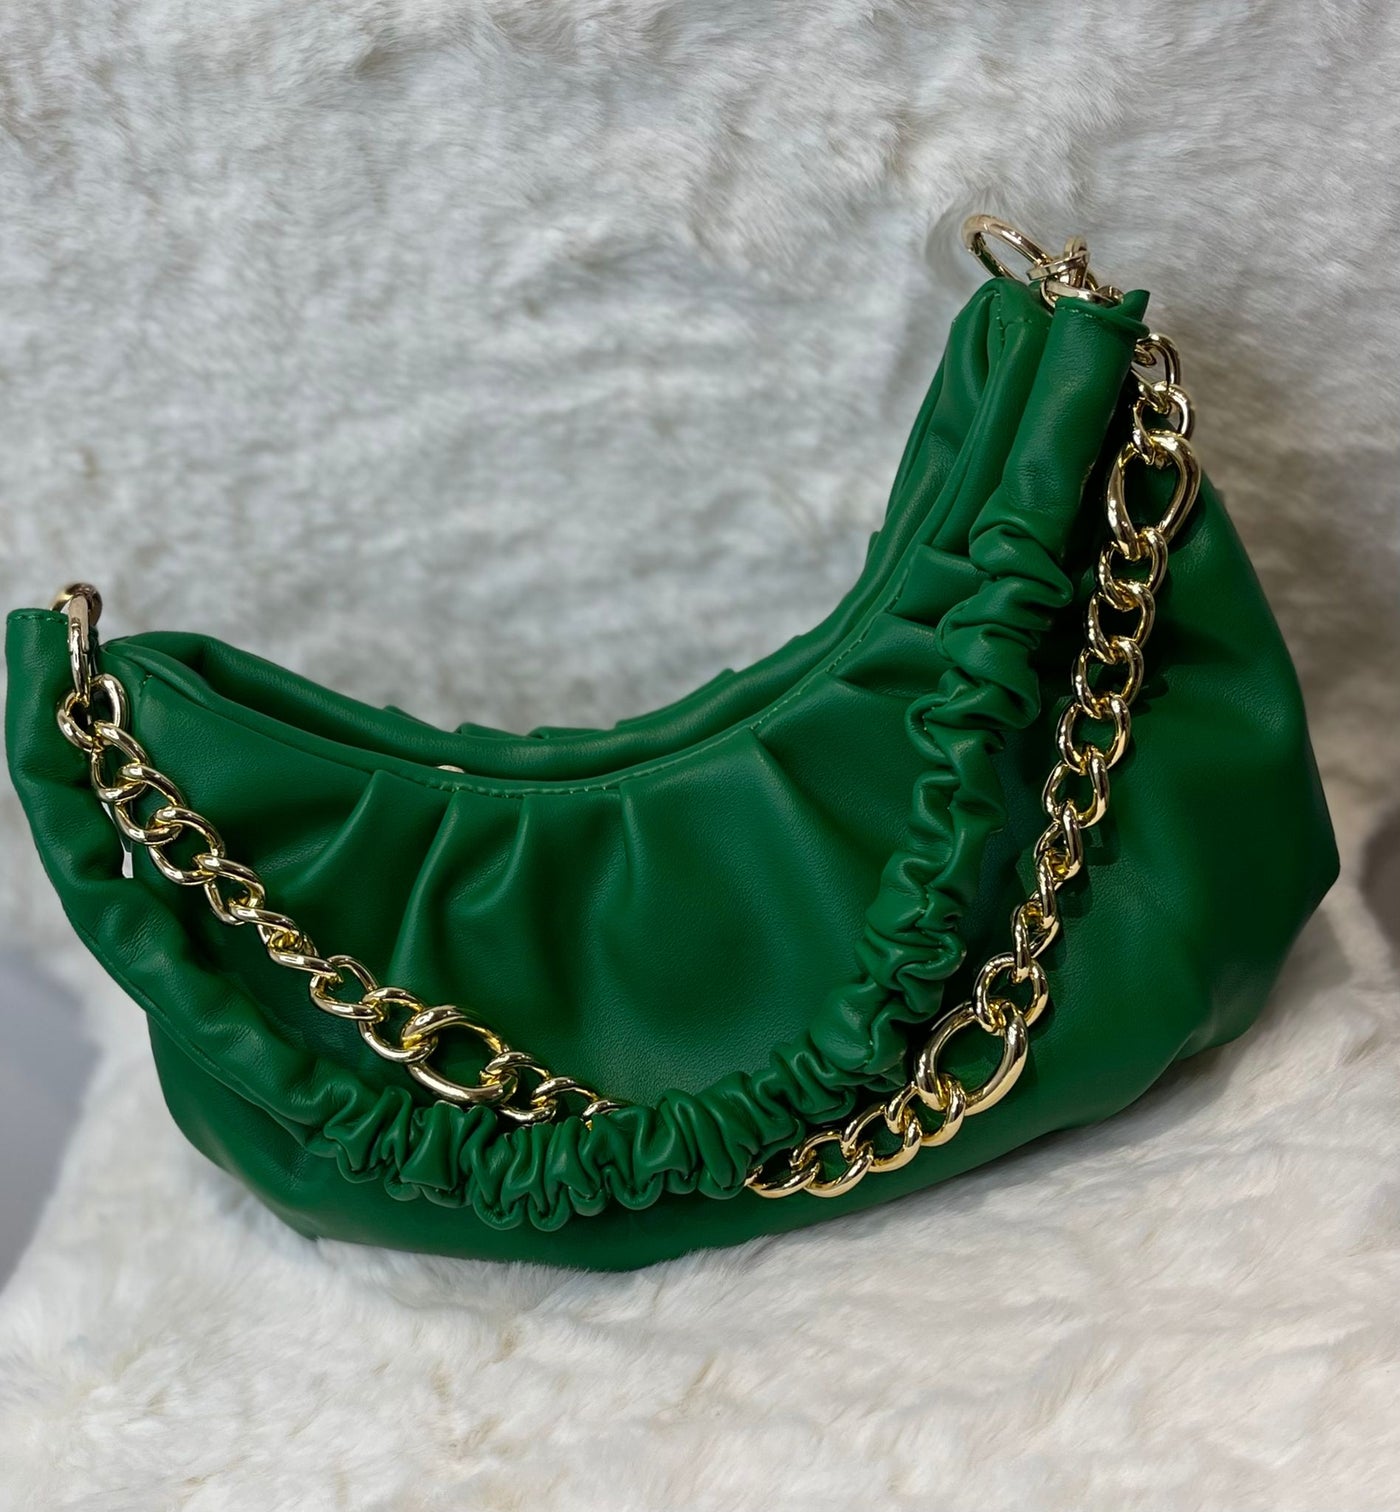 Green ruched gold chain shoulder bag